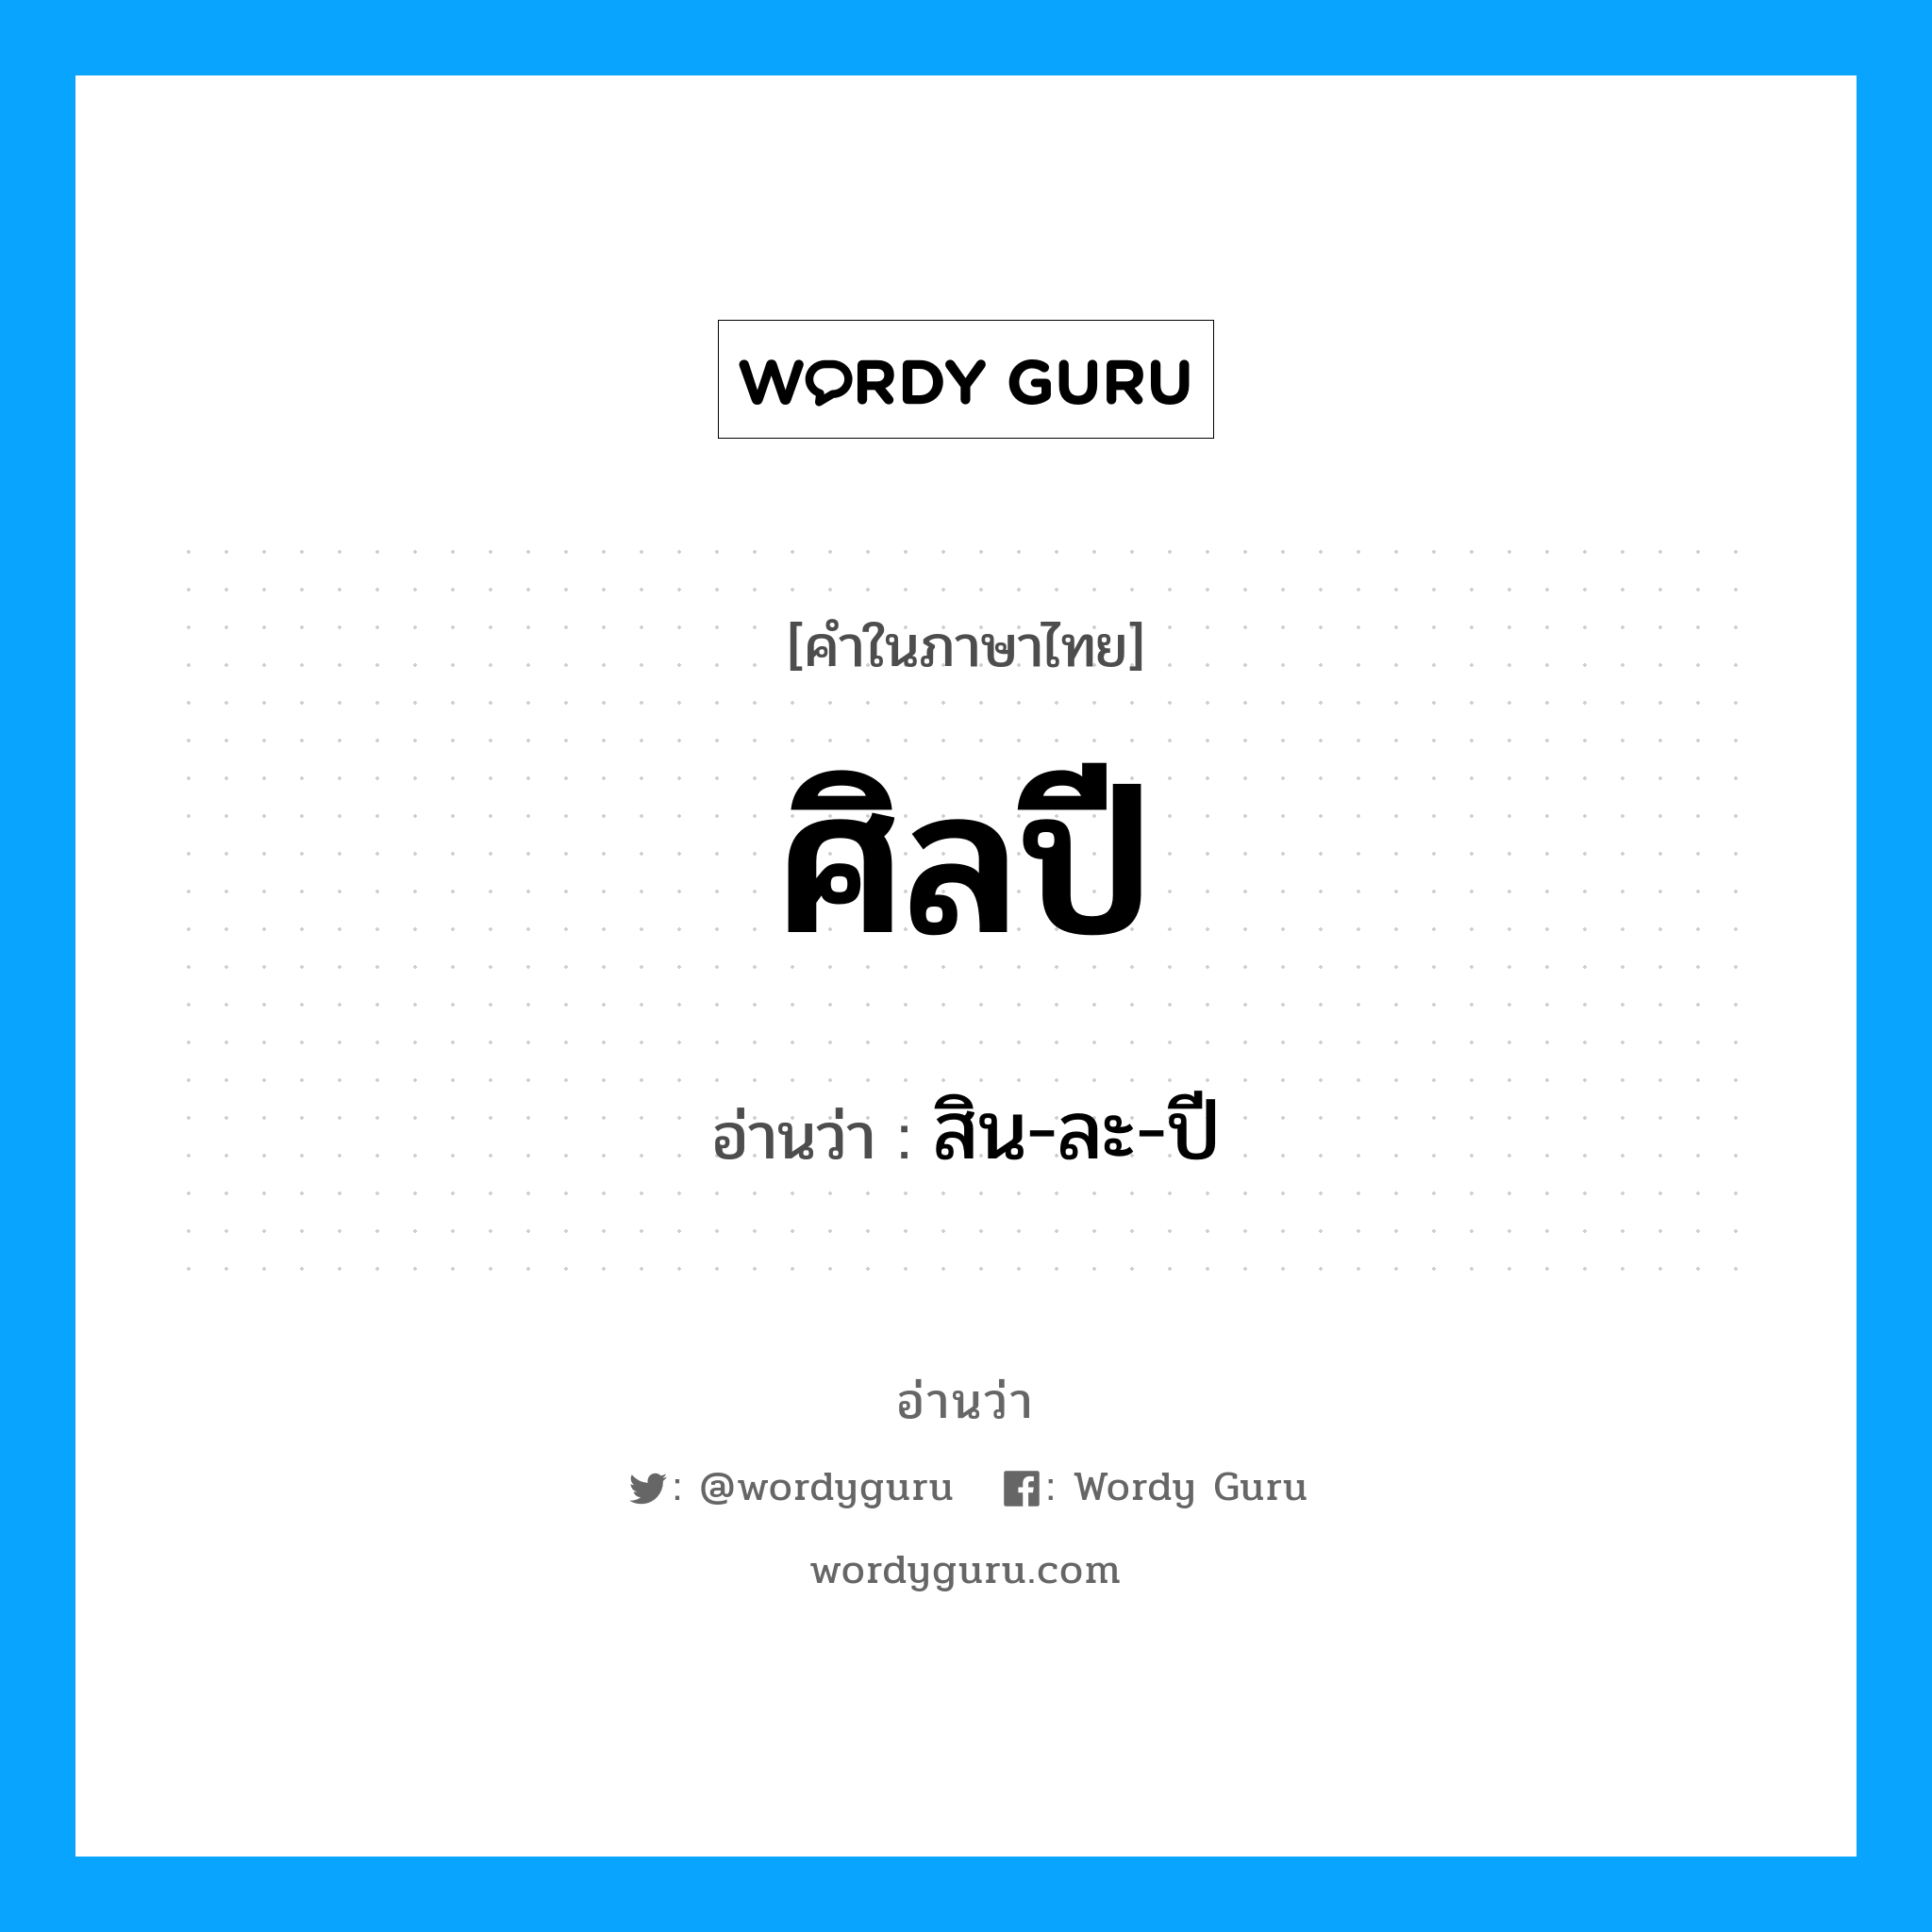 สิน-ละ-ปี เป็นคำอ่านของคำไหน?, คำในภาษาไทย สิน-ละ-ปี อ่านว่า ศิลปี